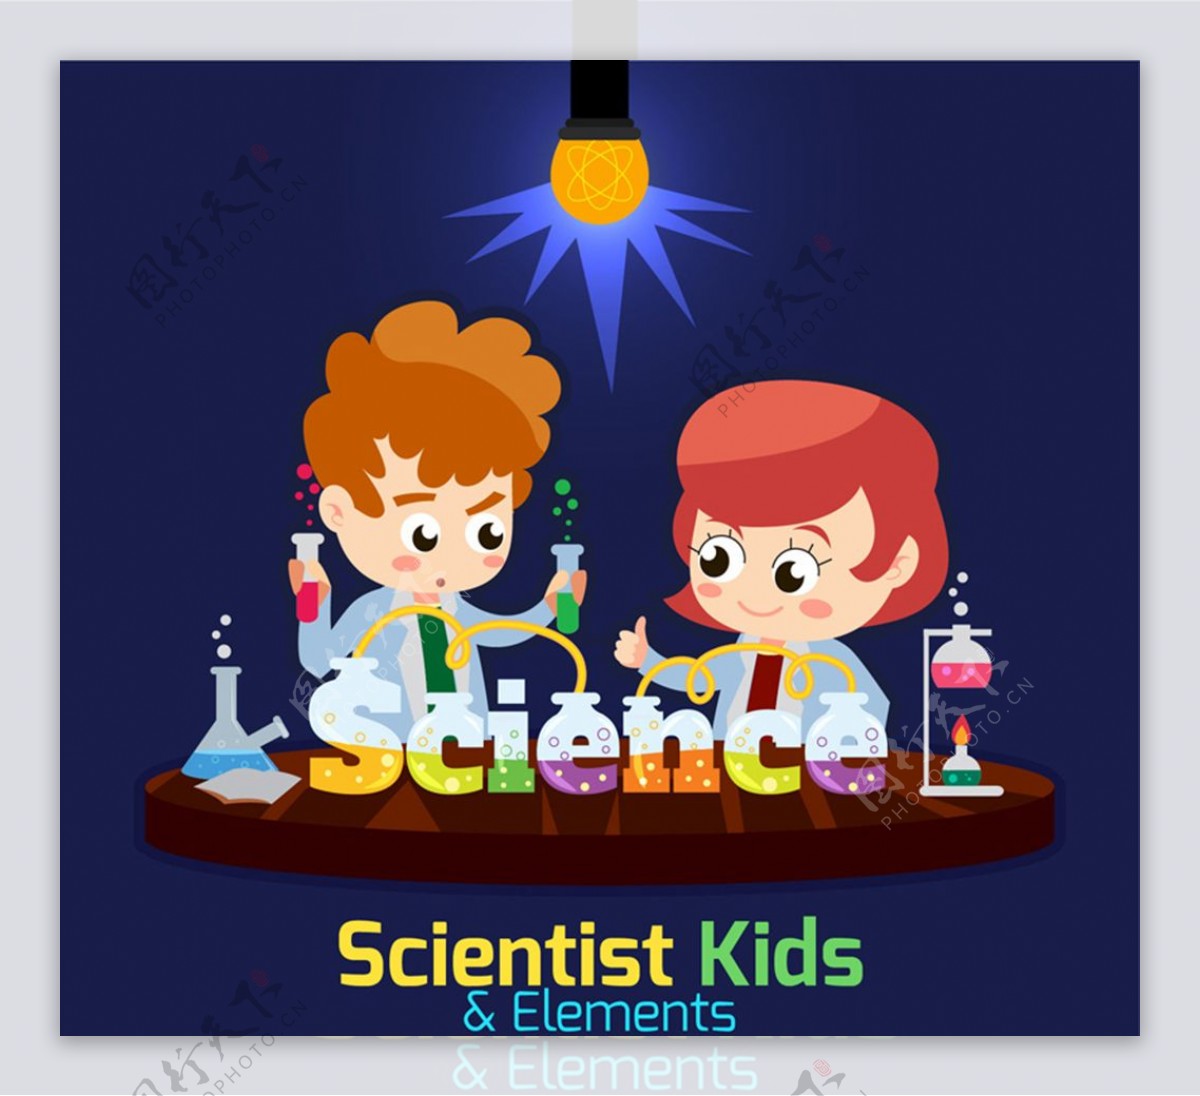 做科学实验的两个小朋友矢量素材